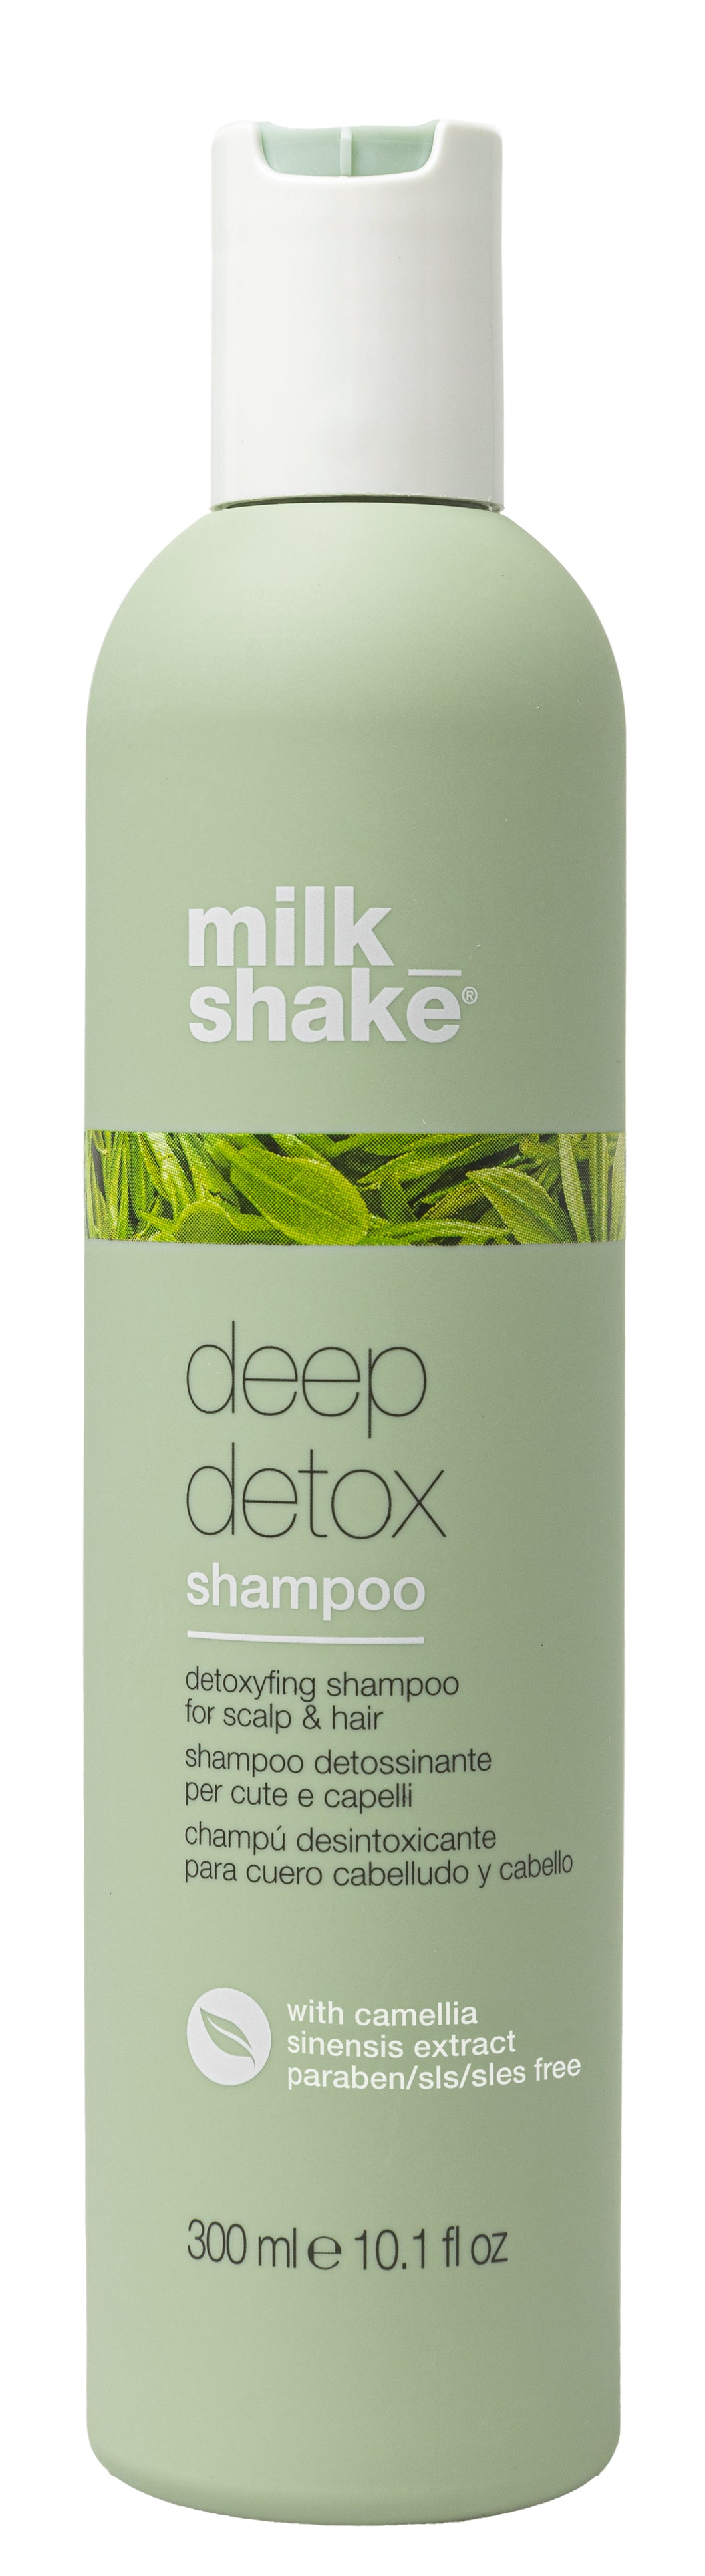 deep detox shampoo retail